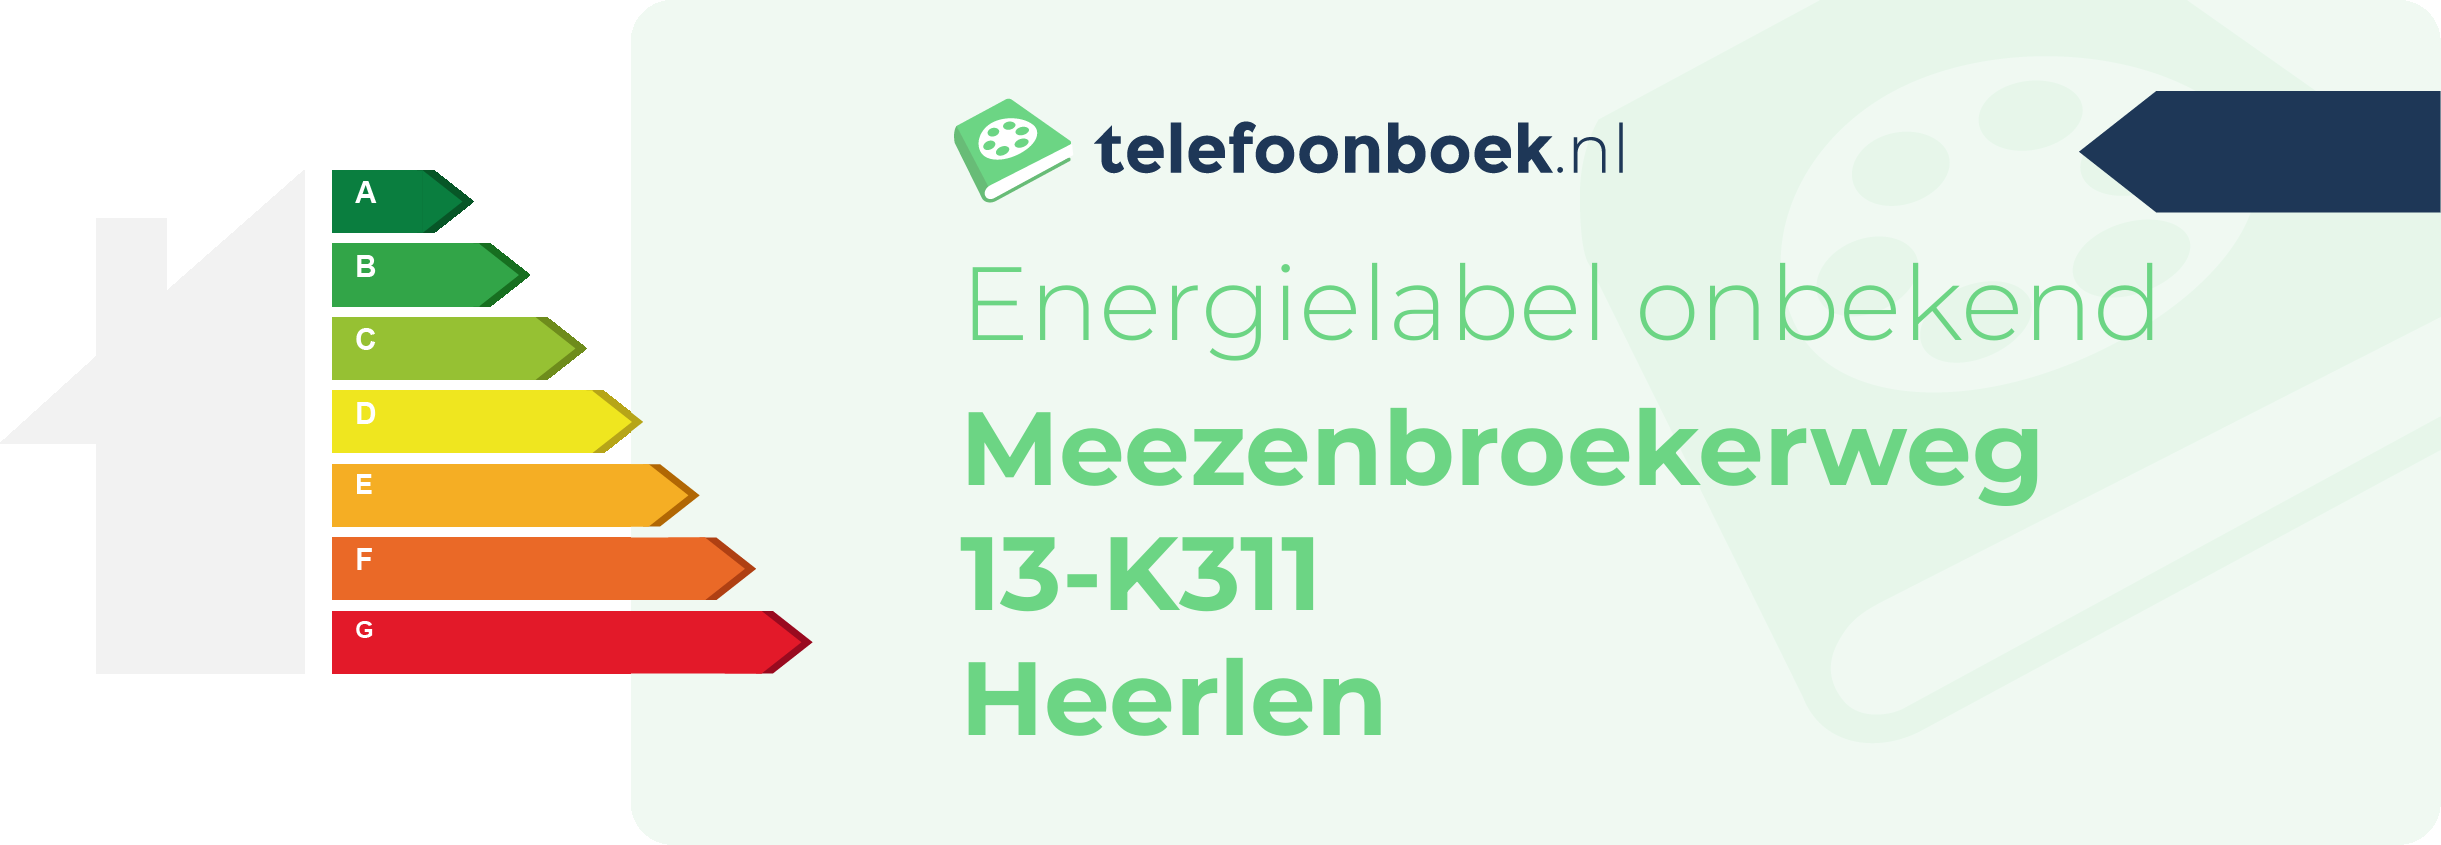 Energielabel Meezenbroekerweg 13-K311 Heerlen